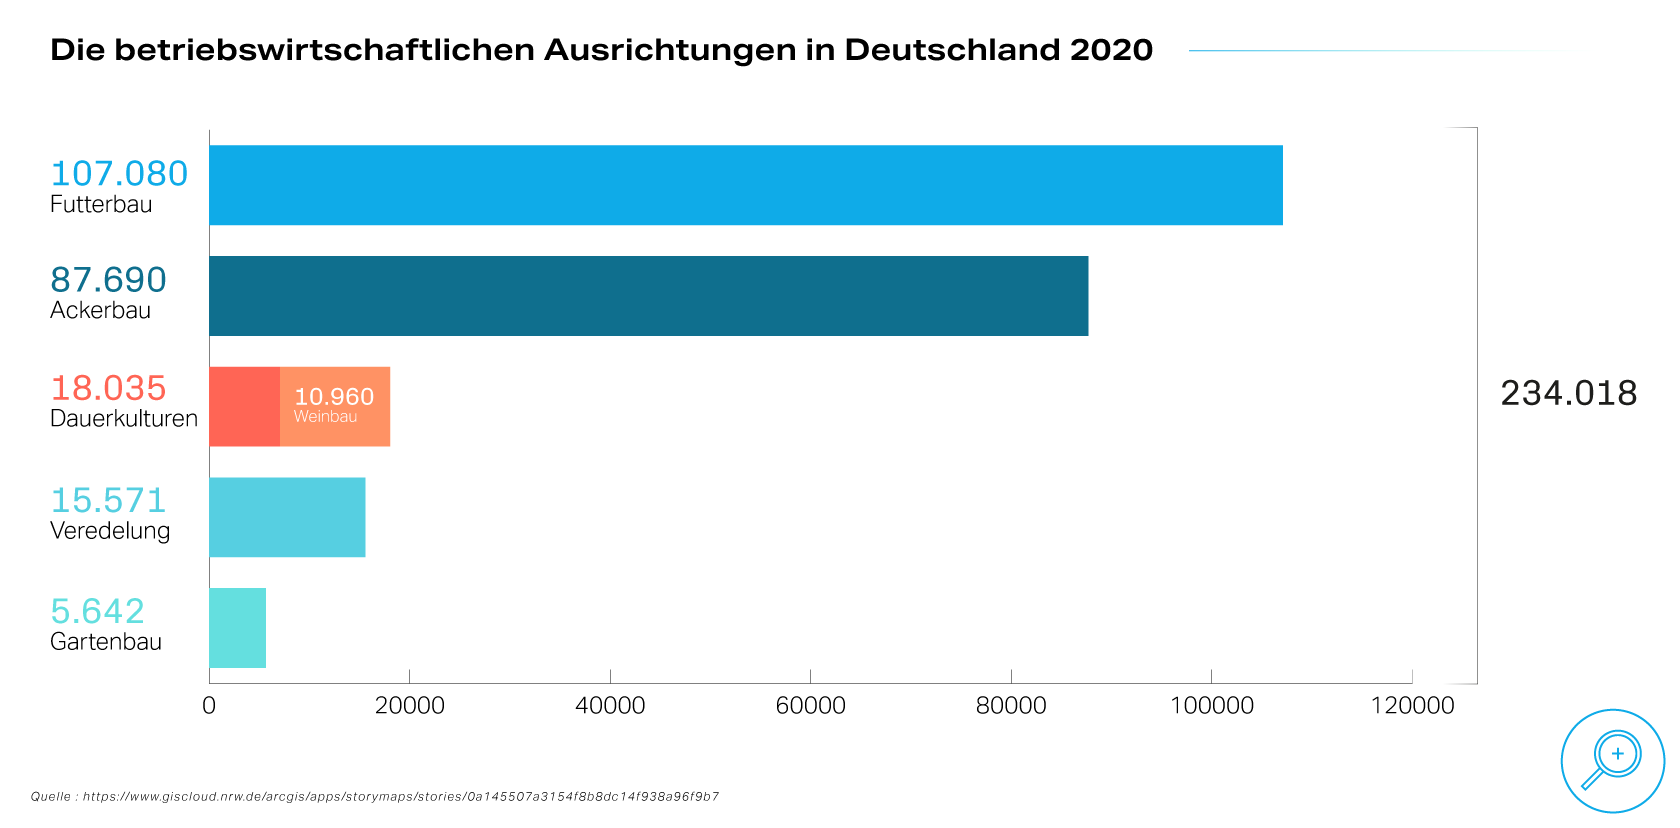 Ein Säulendiagramm, das die betriebswirtschaftlichen Ausrichtungen in Deutschland 2020 zeigt